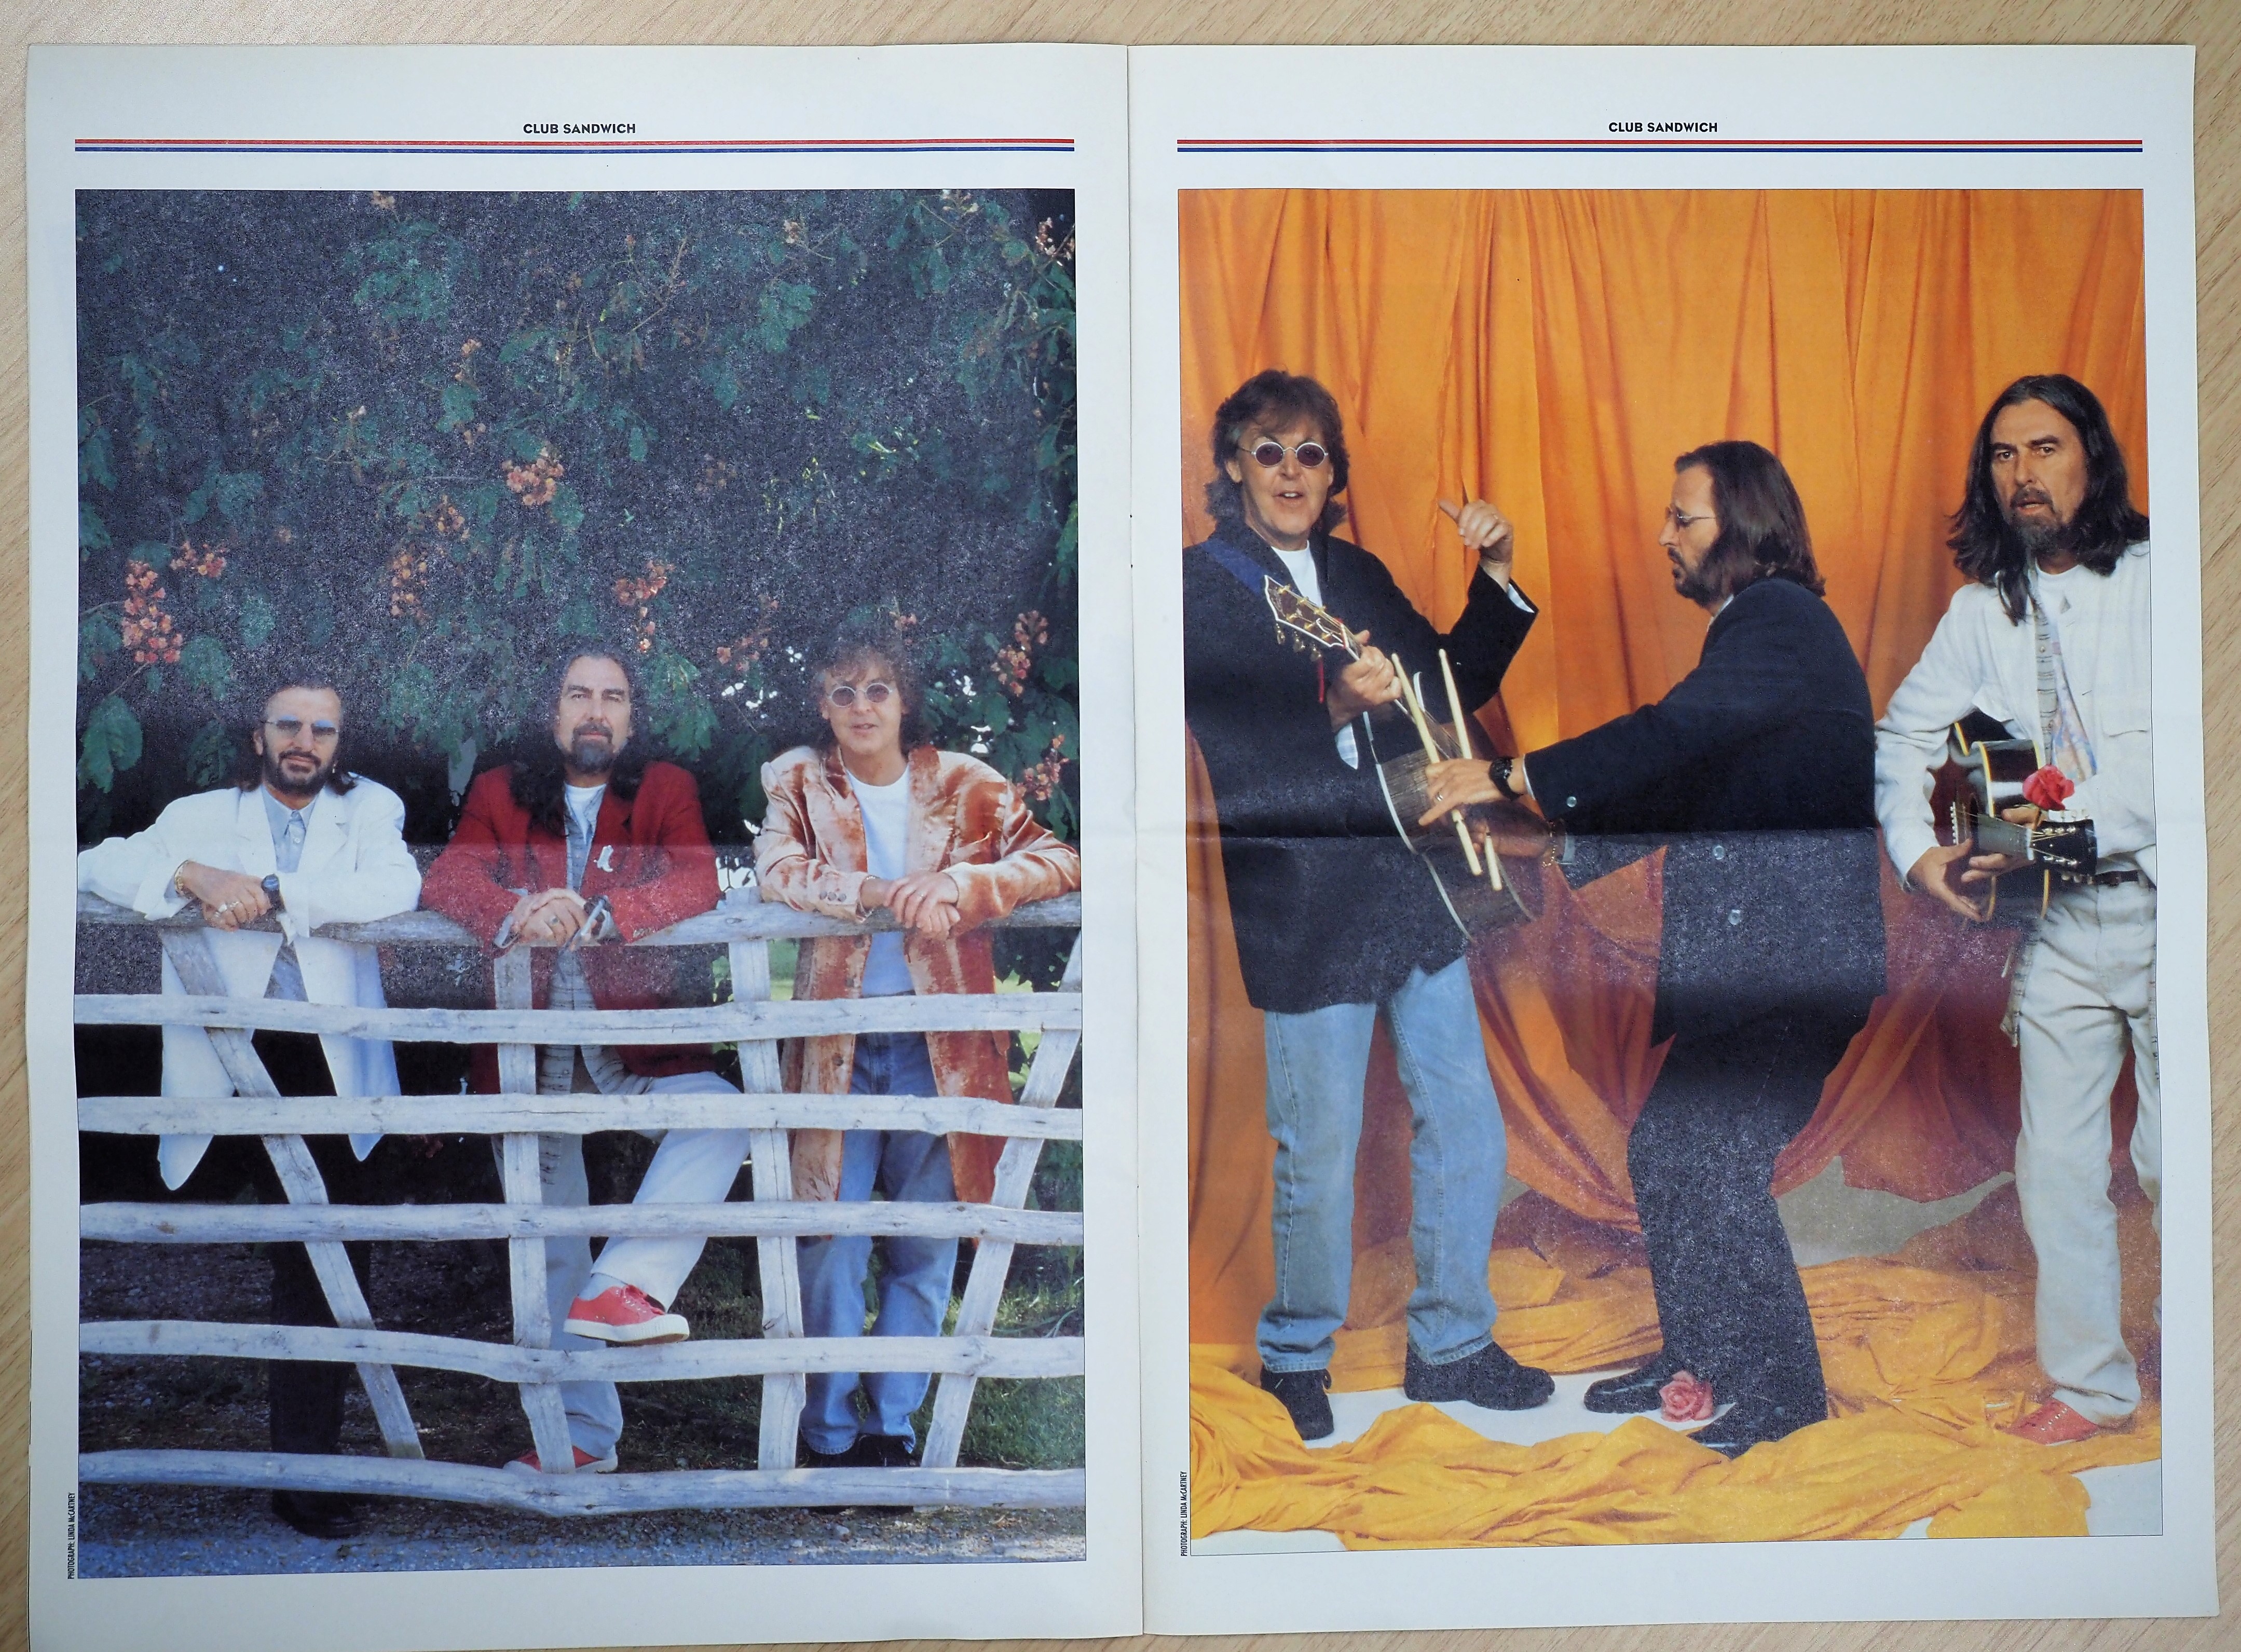 『クラブ・サンドイッチ』（1995年WINTER No76）に収められた、リンゴ、ポール、ジョージの写真。 